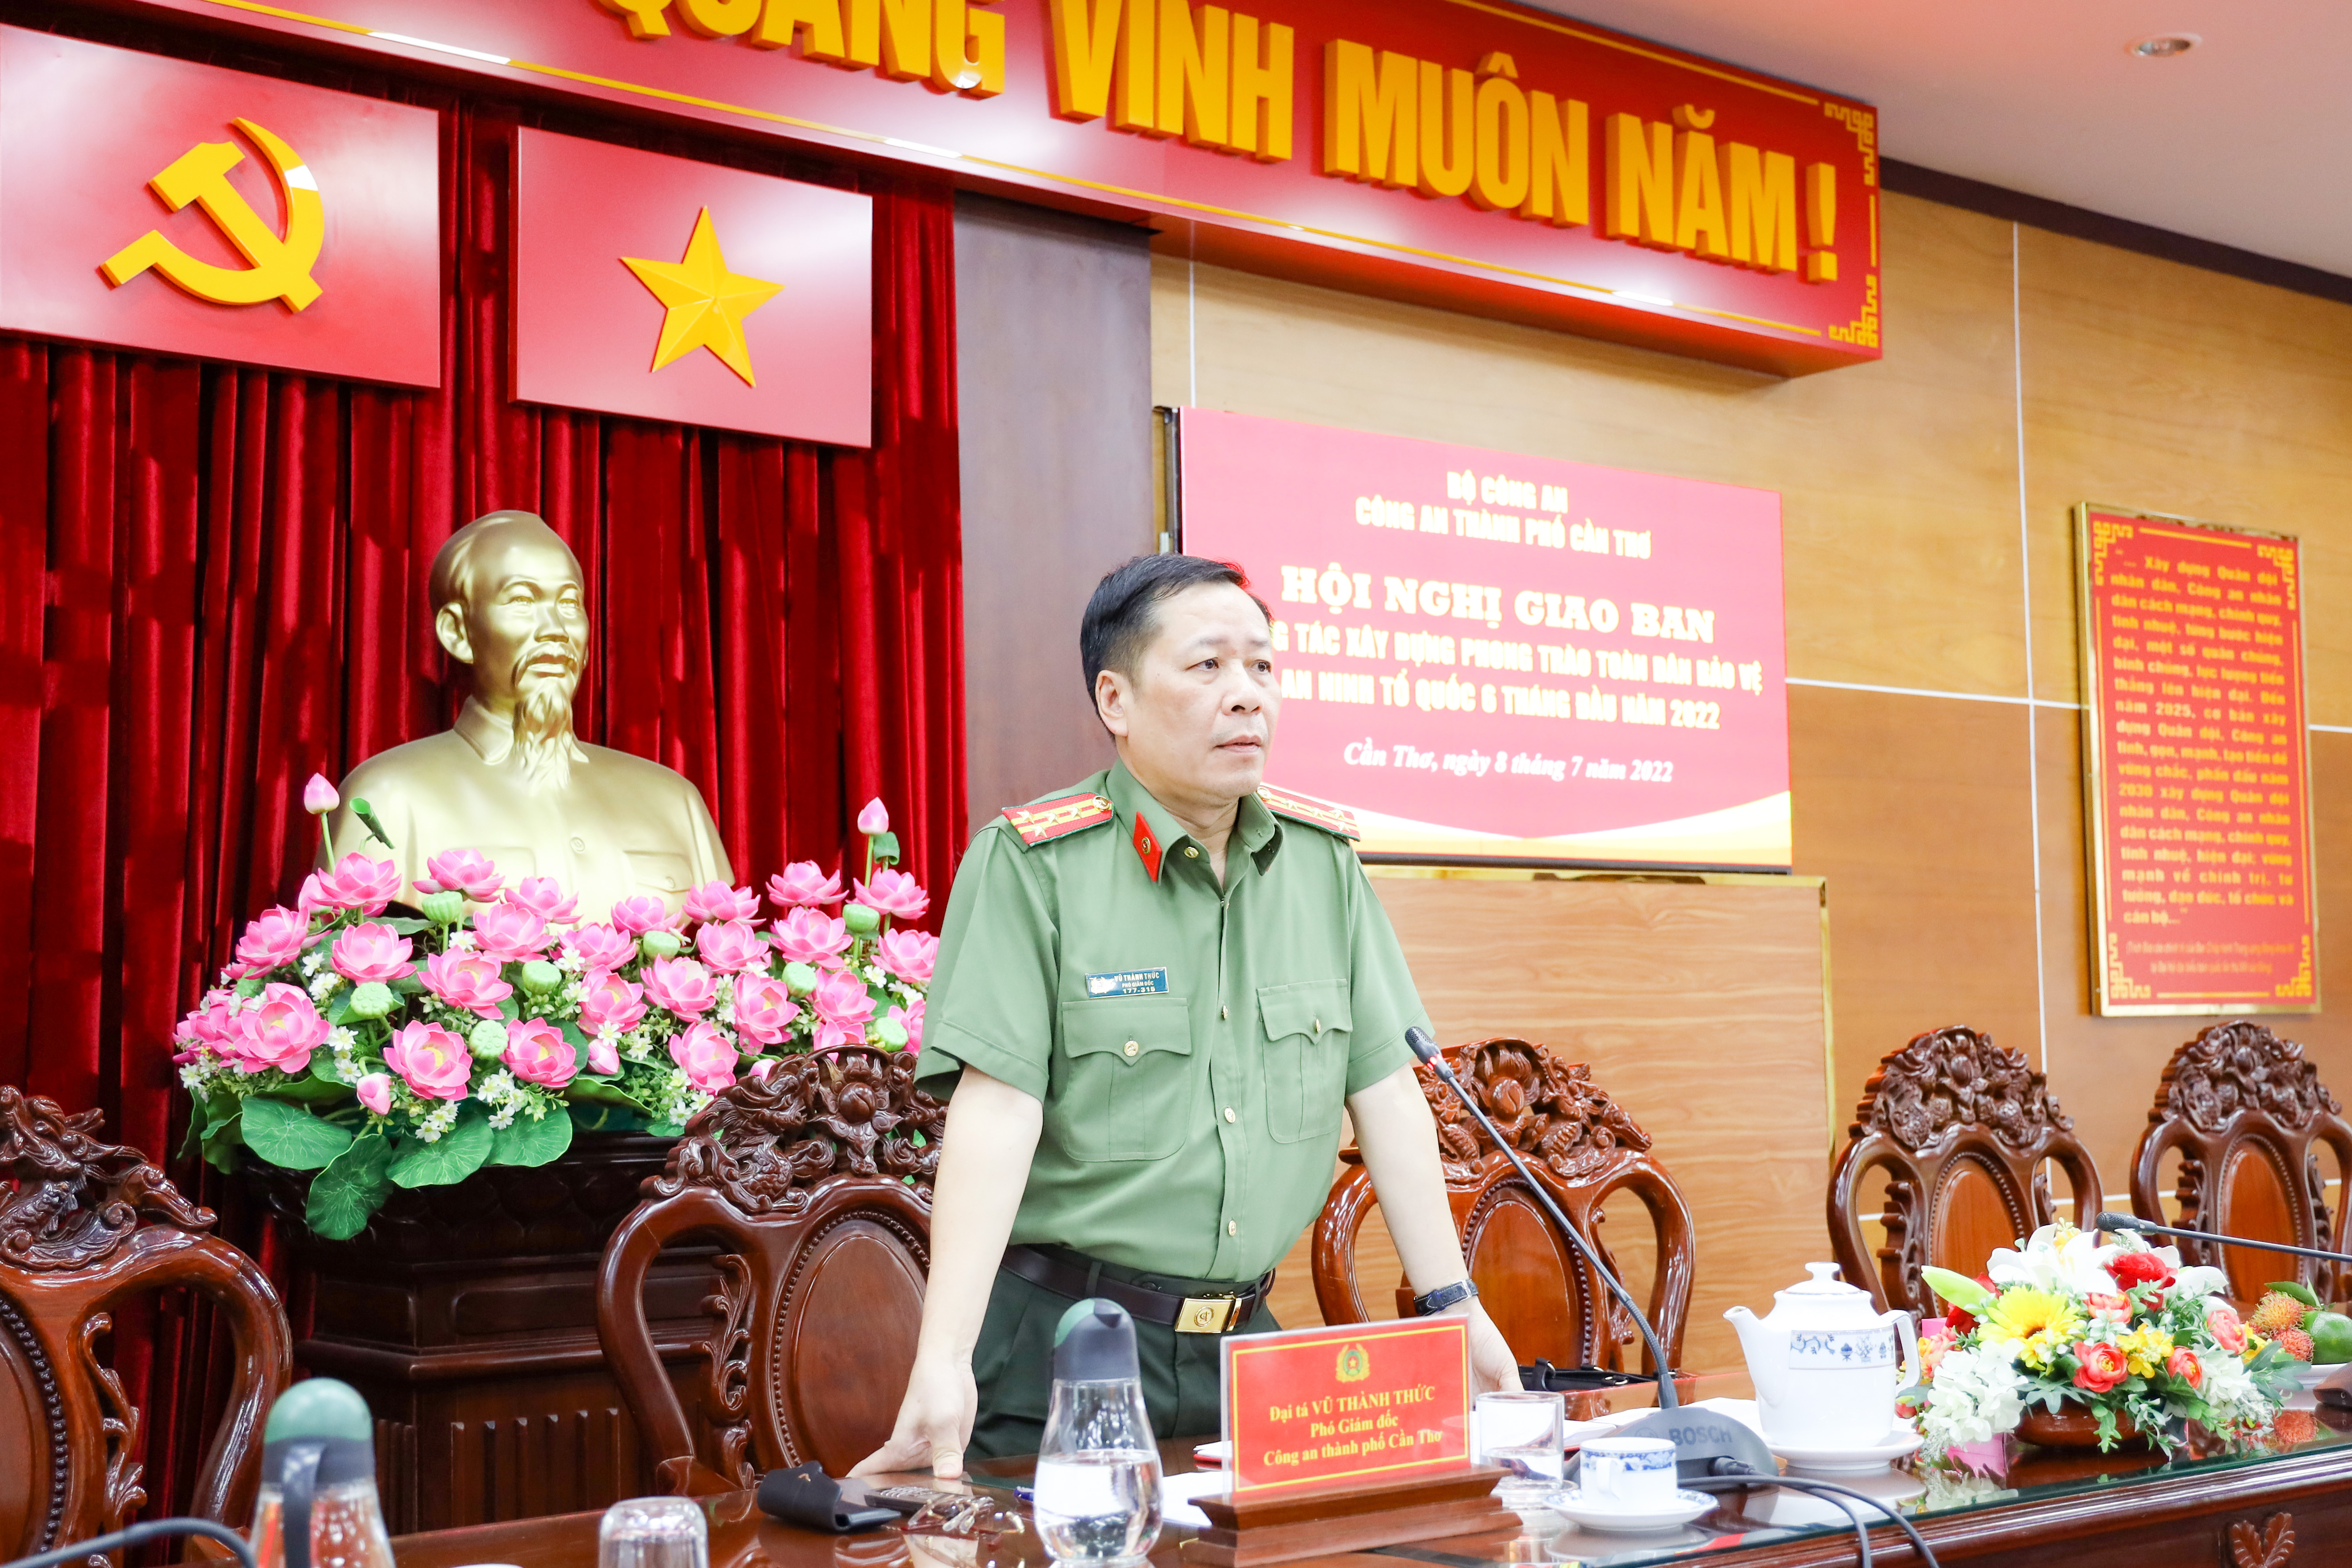 Đại tá Vũ Thành Thức - Phó Giám đốc Công an TP. Cần Thơ dự và chủ trì hội nghị.